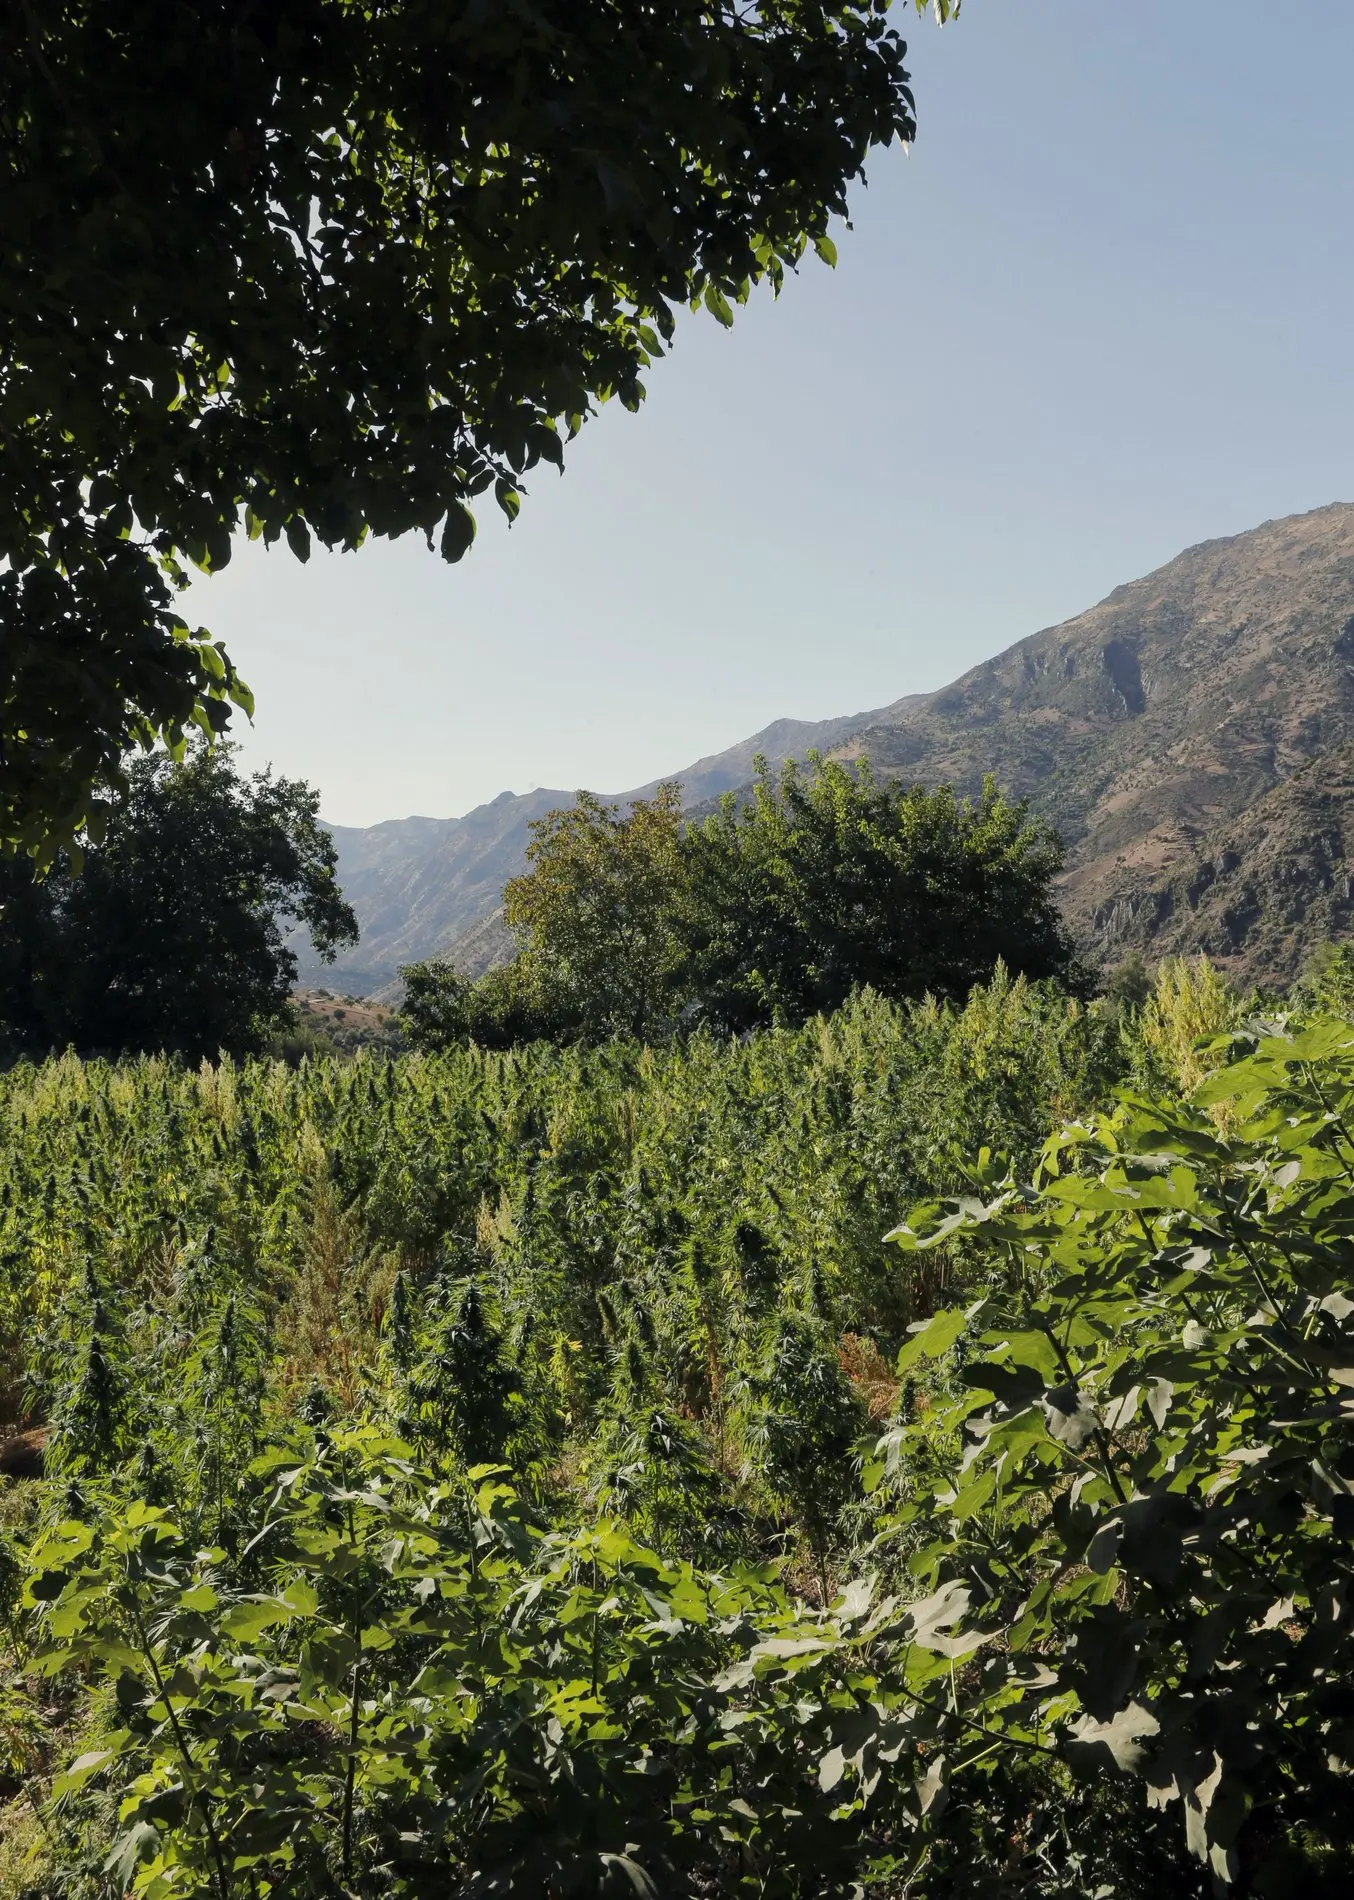 Cannabisplantage im Vordergrund; Berge Marokkos im Hintergrund